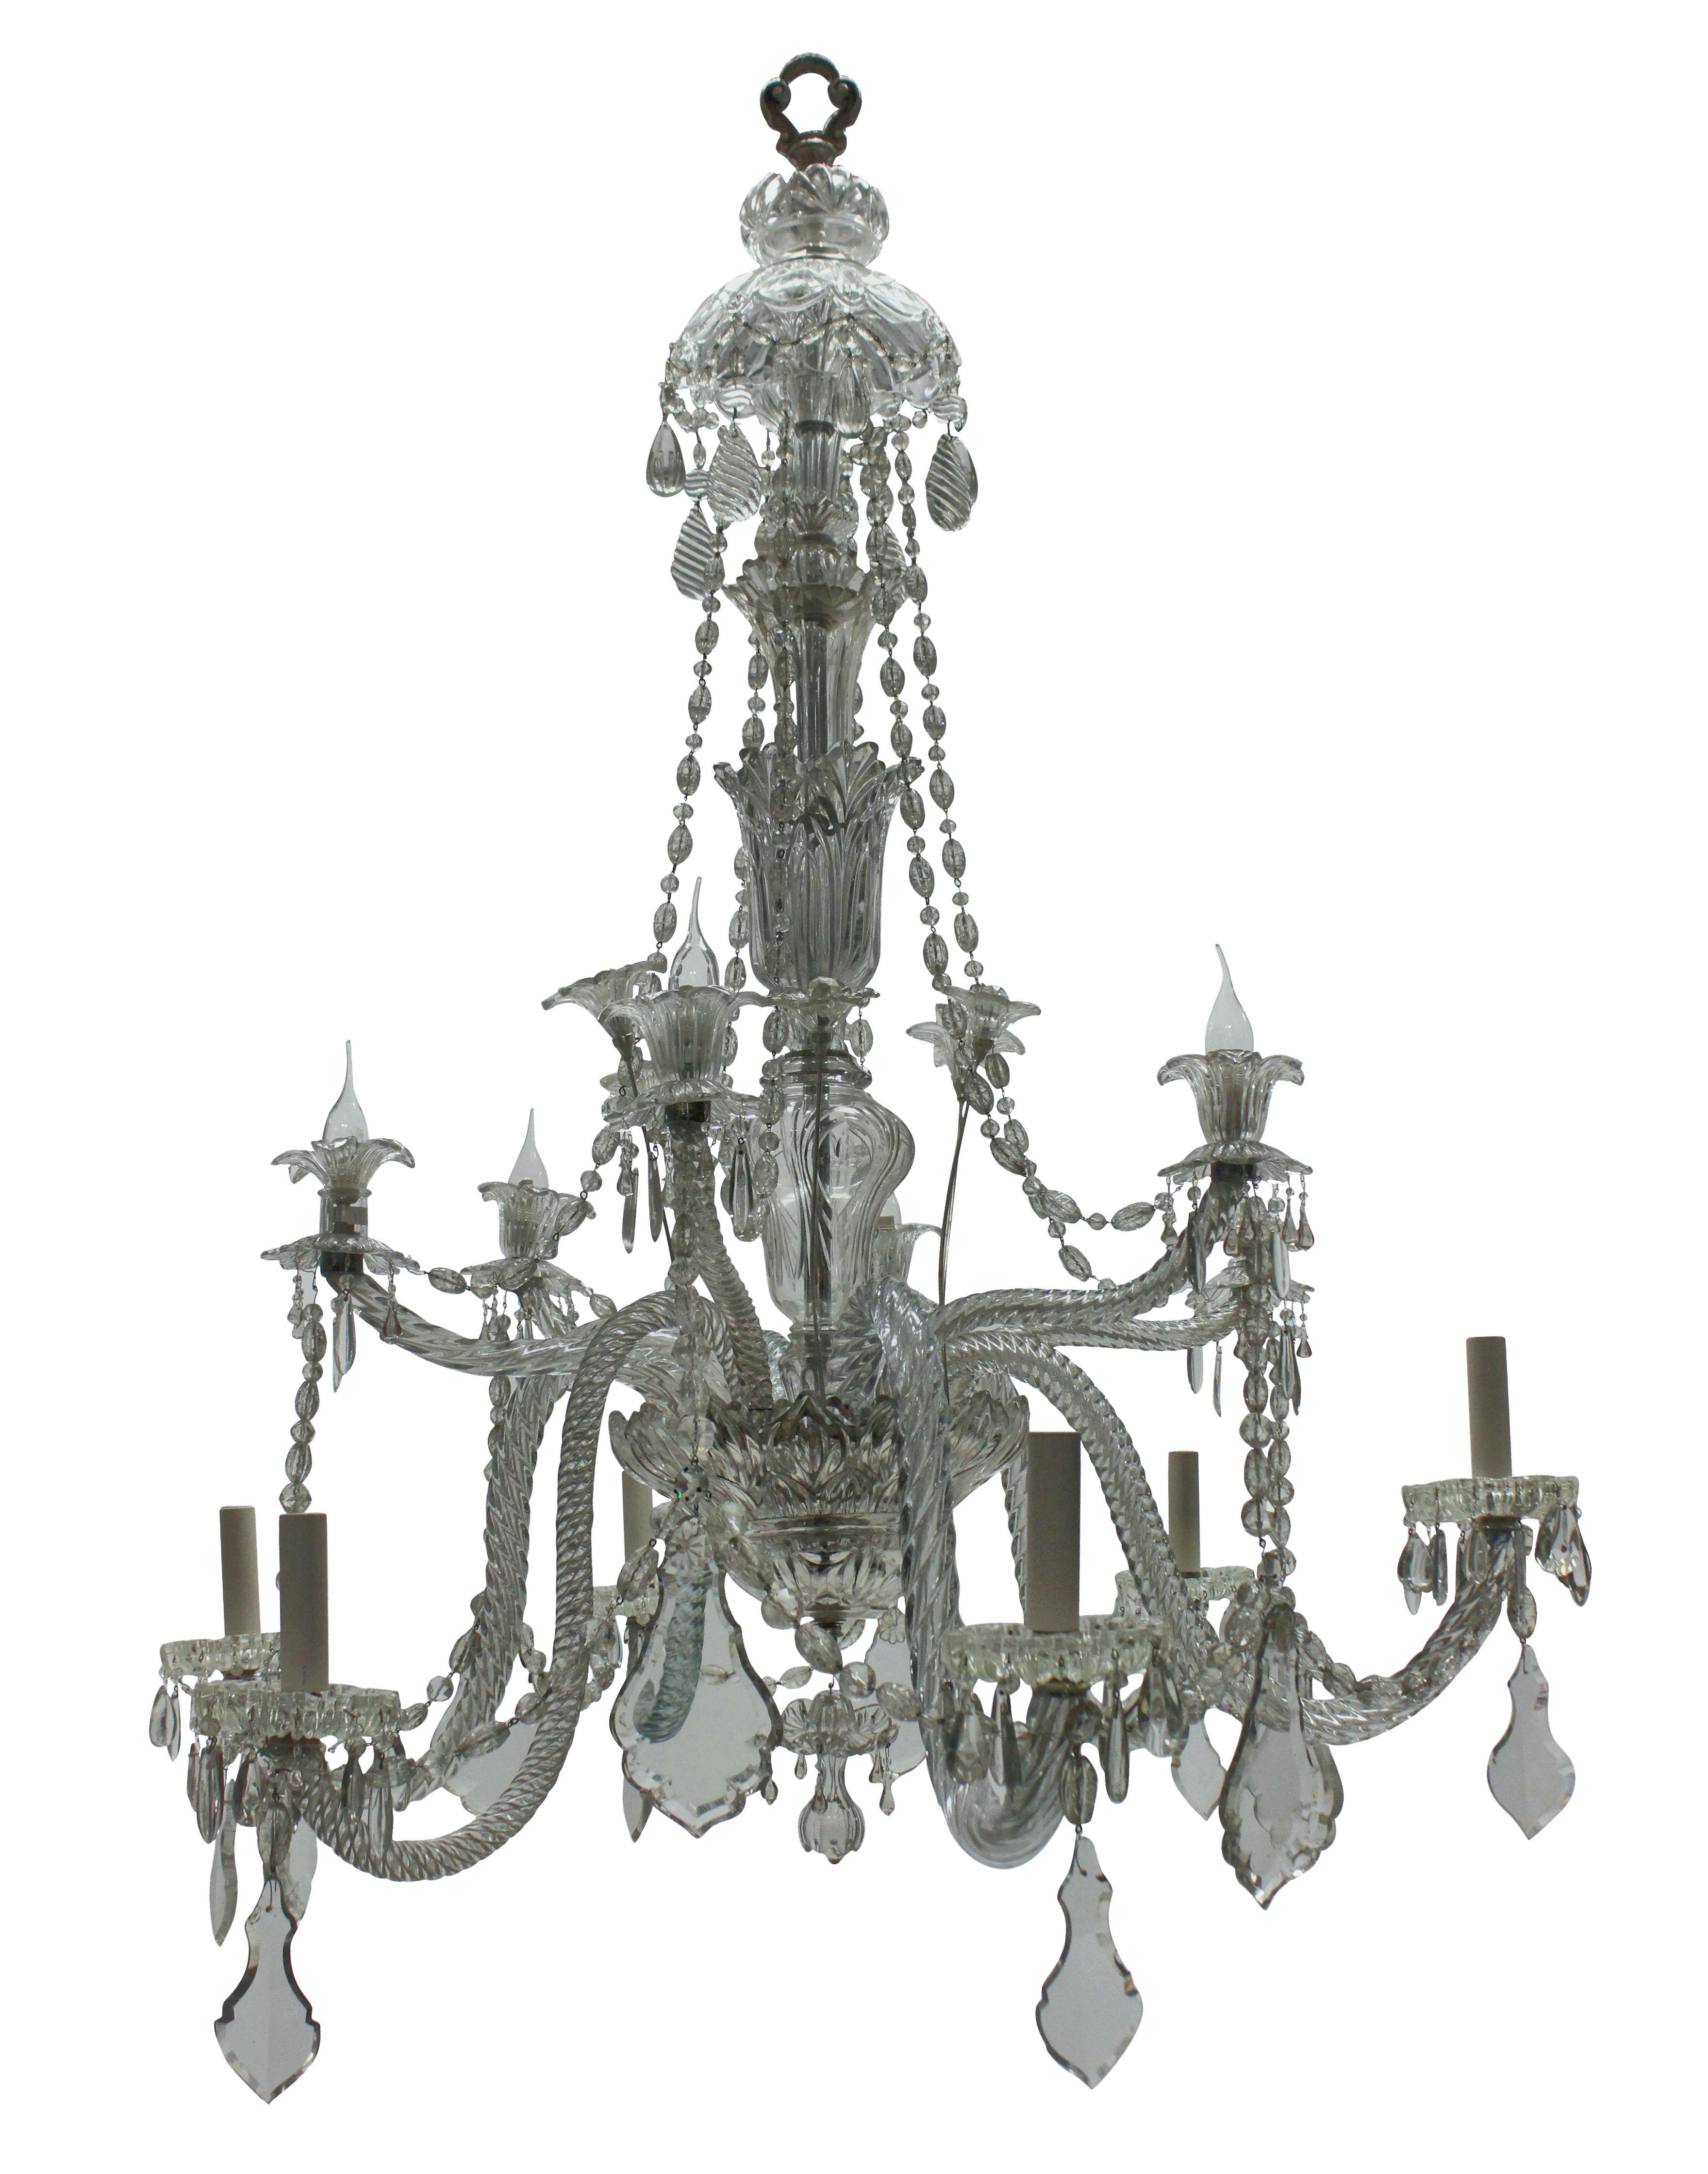 Un grand lustre français de Baccarat, composé de douze bras sur deux niveaux. Profondément décorée de détails feuillagés, de guirlandes et de pendentifs.